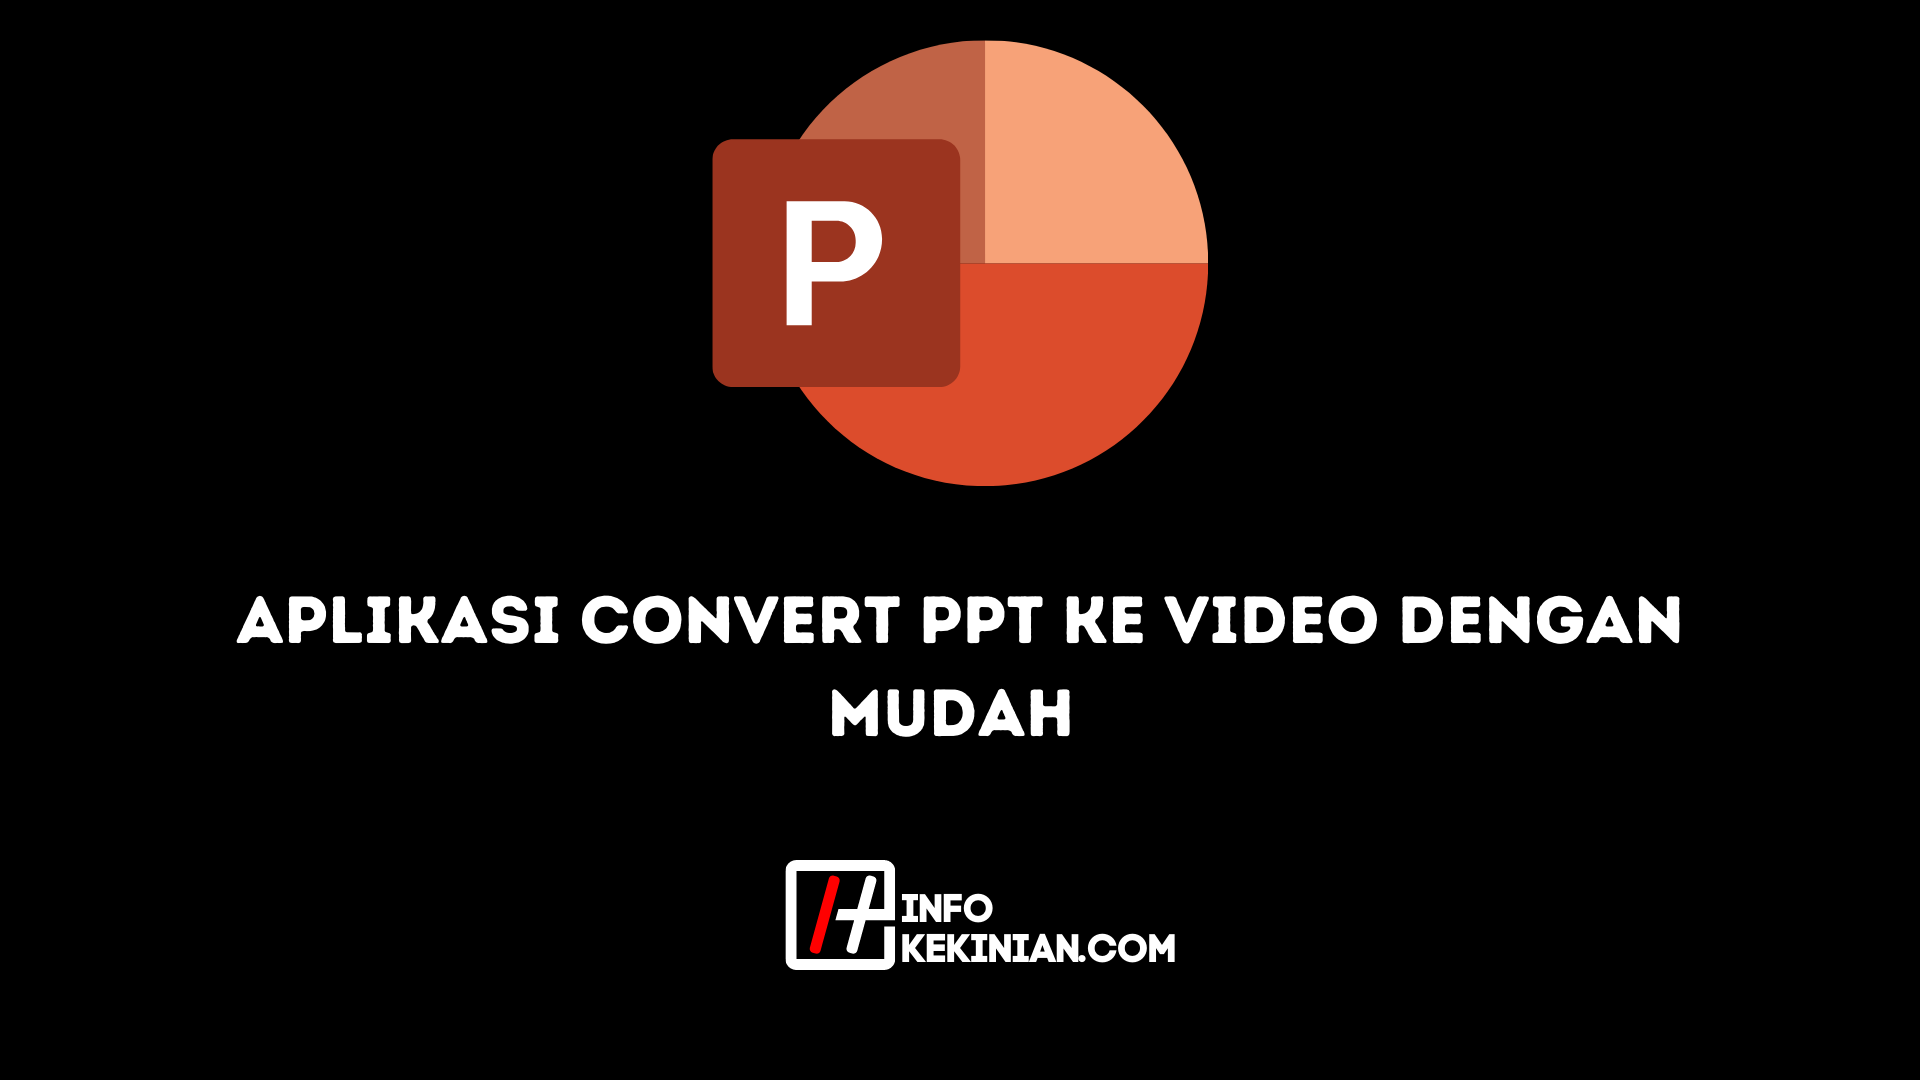 Aplikasi Convert PPT ke Video dengan Mudah